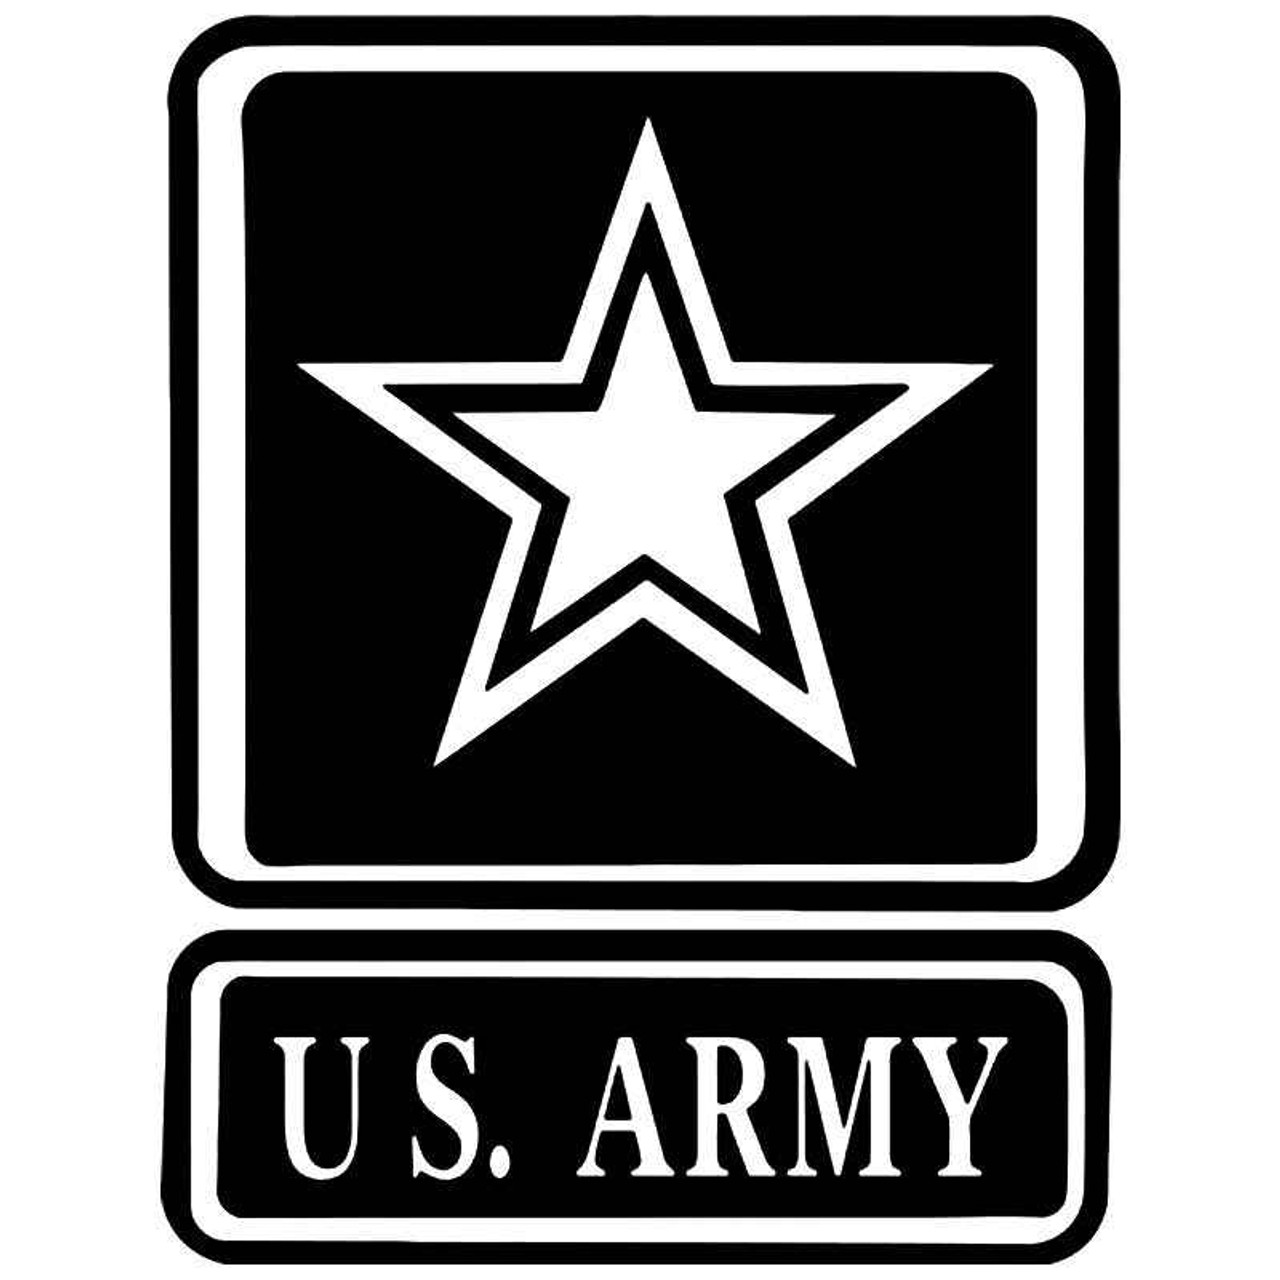 Army Logo Images Us Army Logo We Have 58 Amazing Background